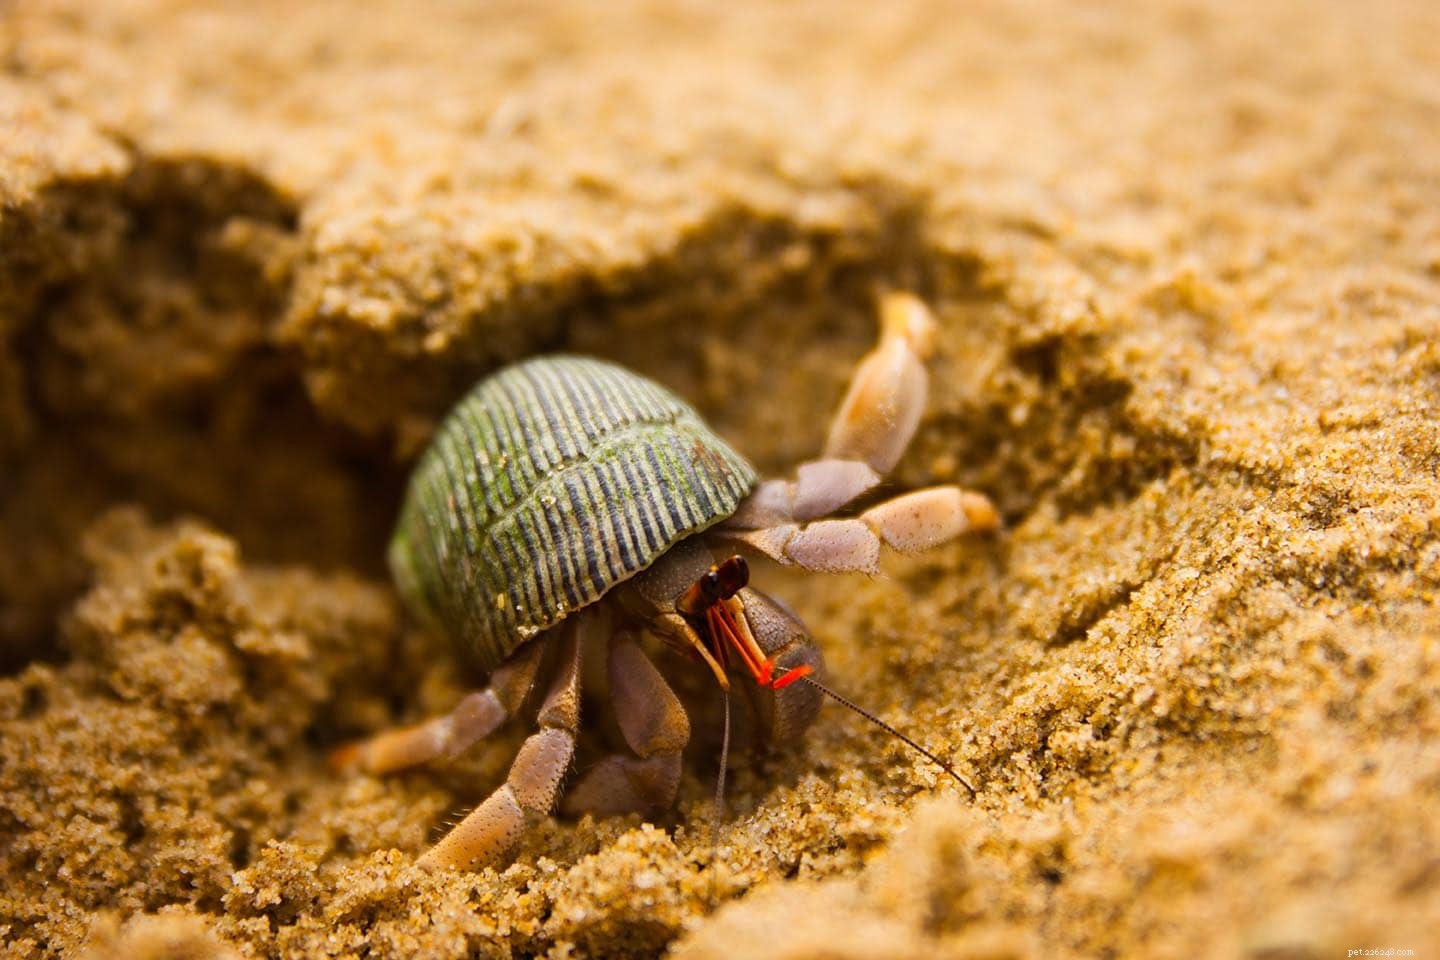 Por que os caranguejos eremitas cavam? 4 possíveis motivos